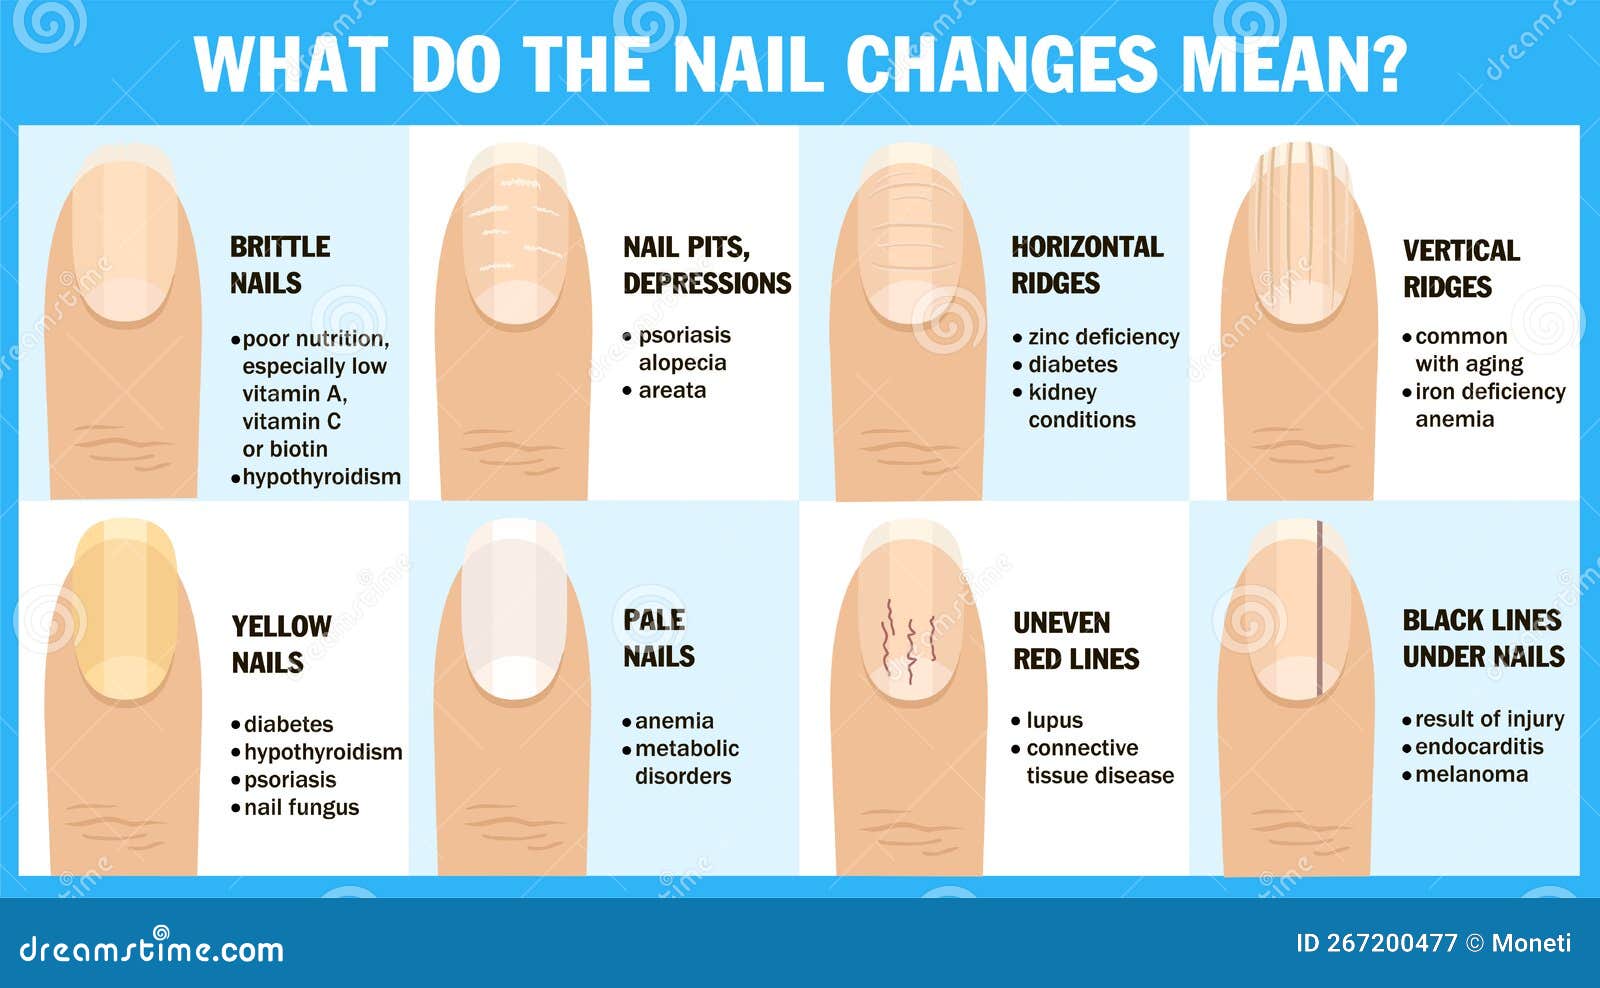 Nail repair: How to treat damaged nails